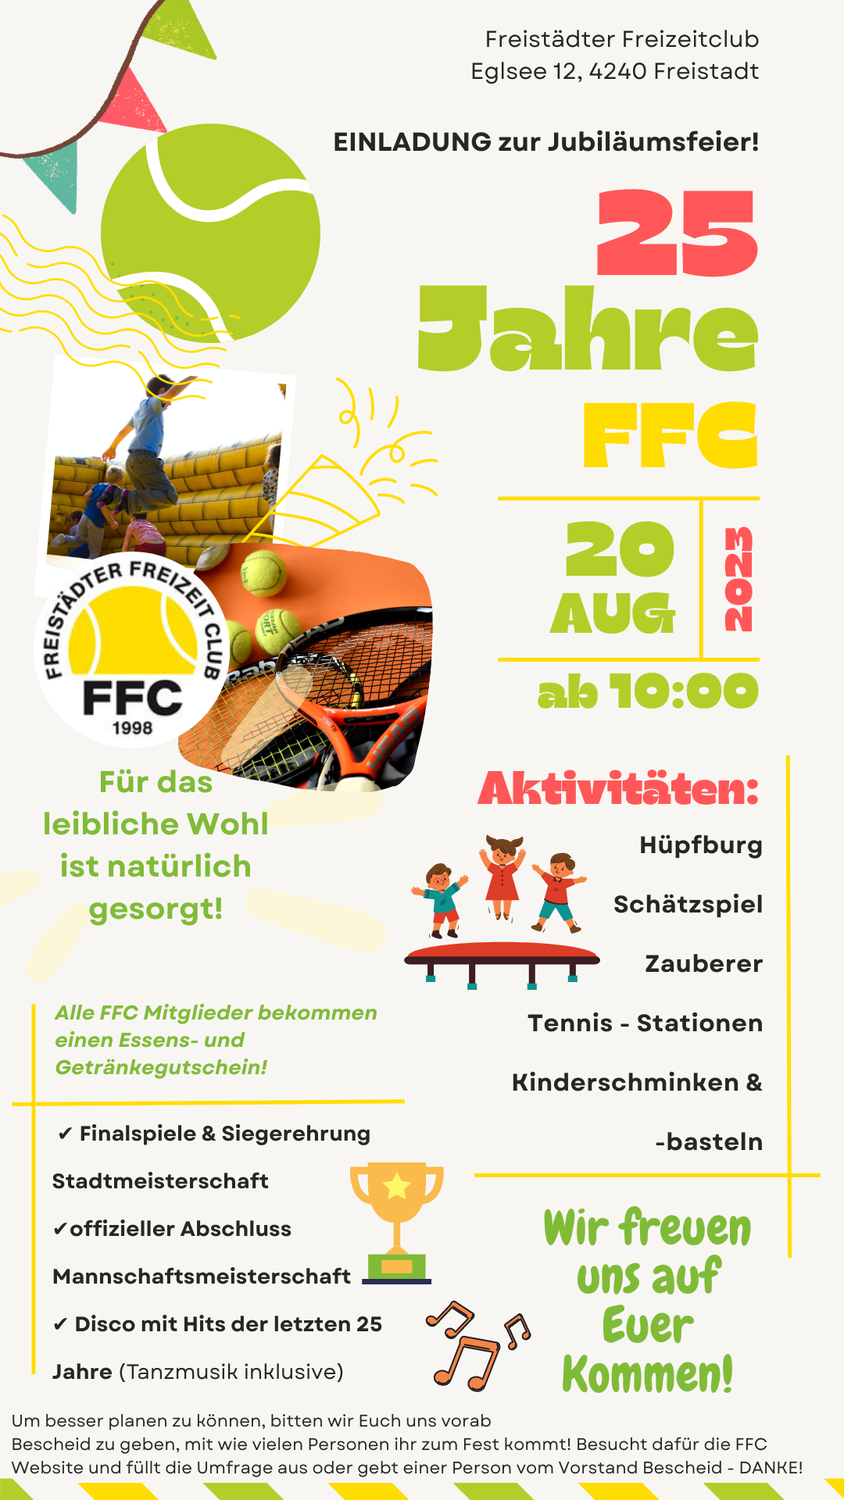 Einladung zur FFC Jubiläumsfeier